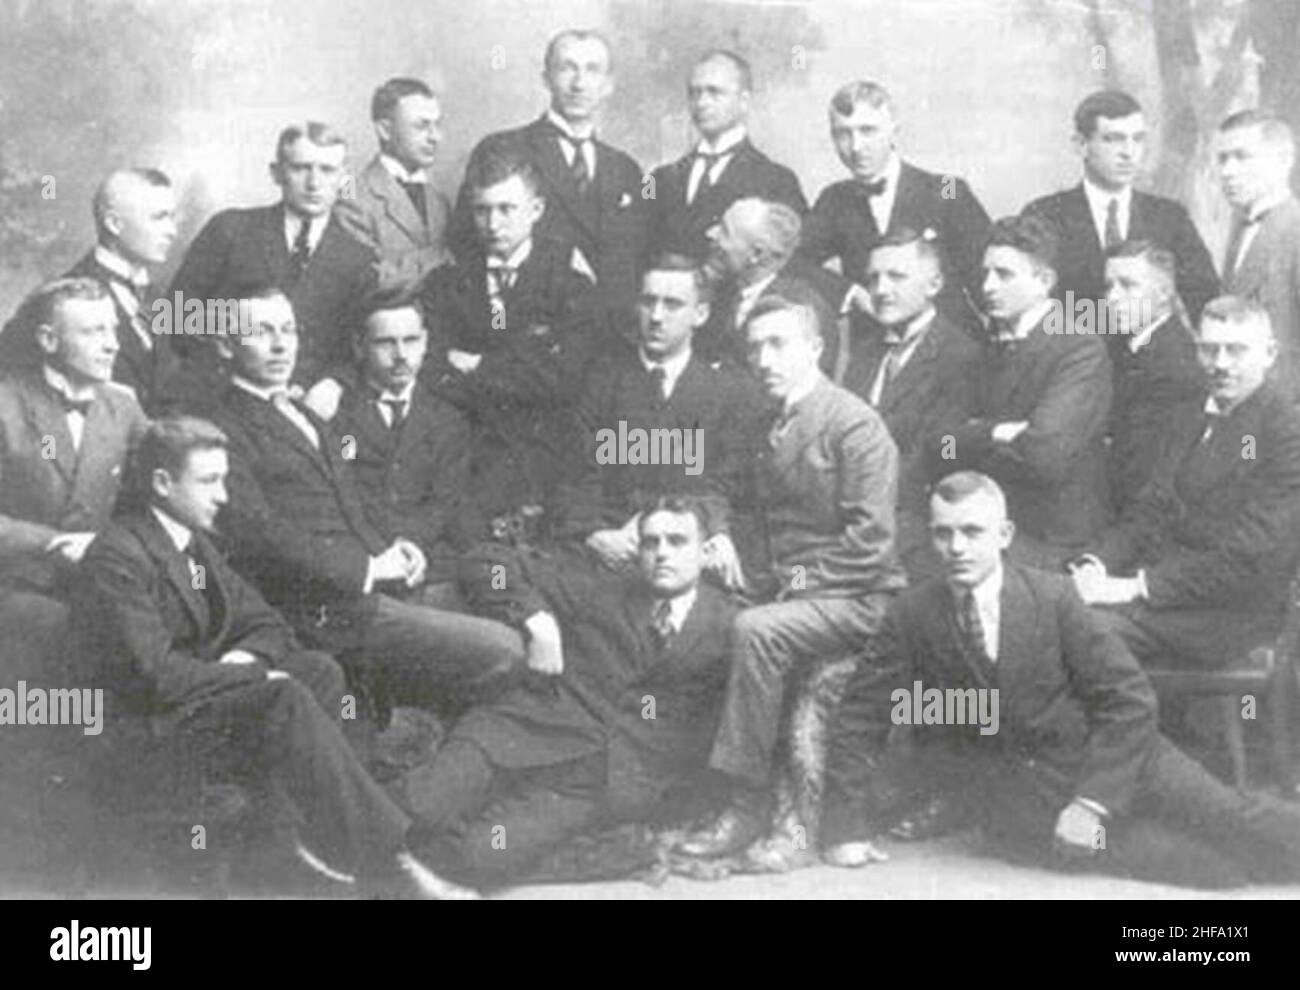 Schwarzmeerdeutsche Studenten in Tübingen, 1920. Dr. Karl Stumpp, der Autor eines bedeutsamen Buches über die Emigration von Deutschen nach Russland sitzt als vierter von links in der zweiten Reihe. Stock Photo